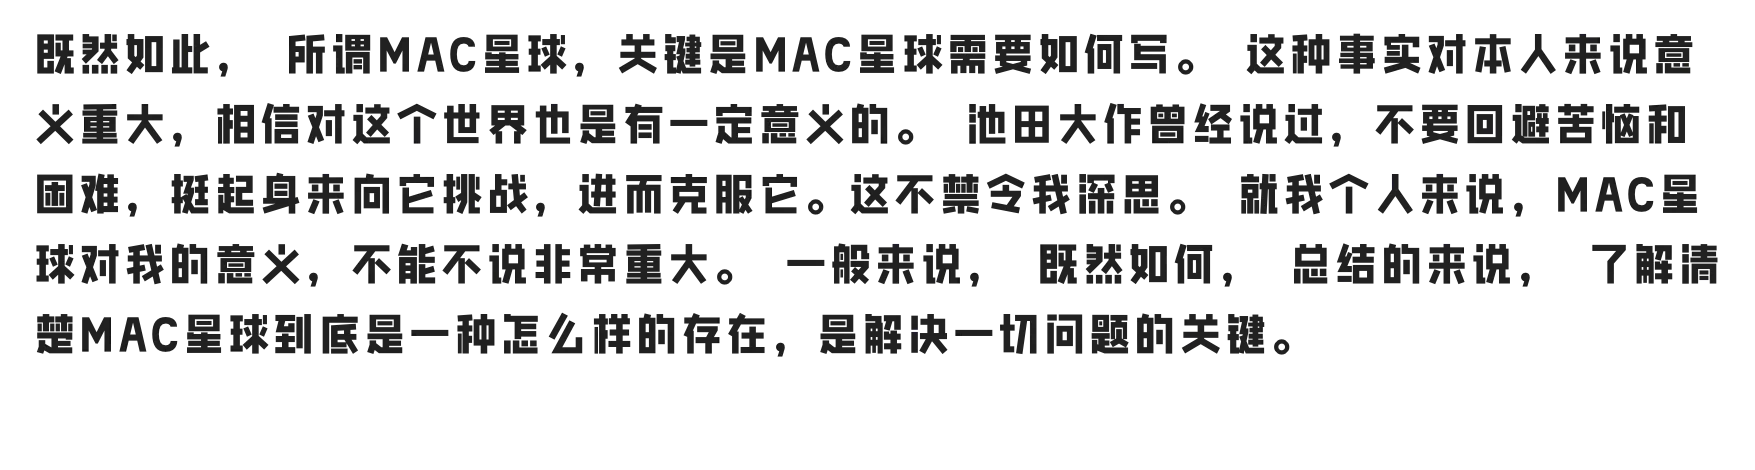 图片[1] - 「联想小新潮酷体&免费商用&中文字体」极智探索 字然进化 联想小新品牌定制字体上线